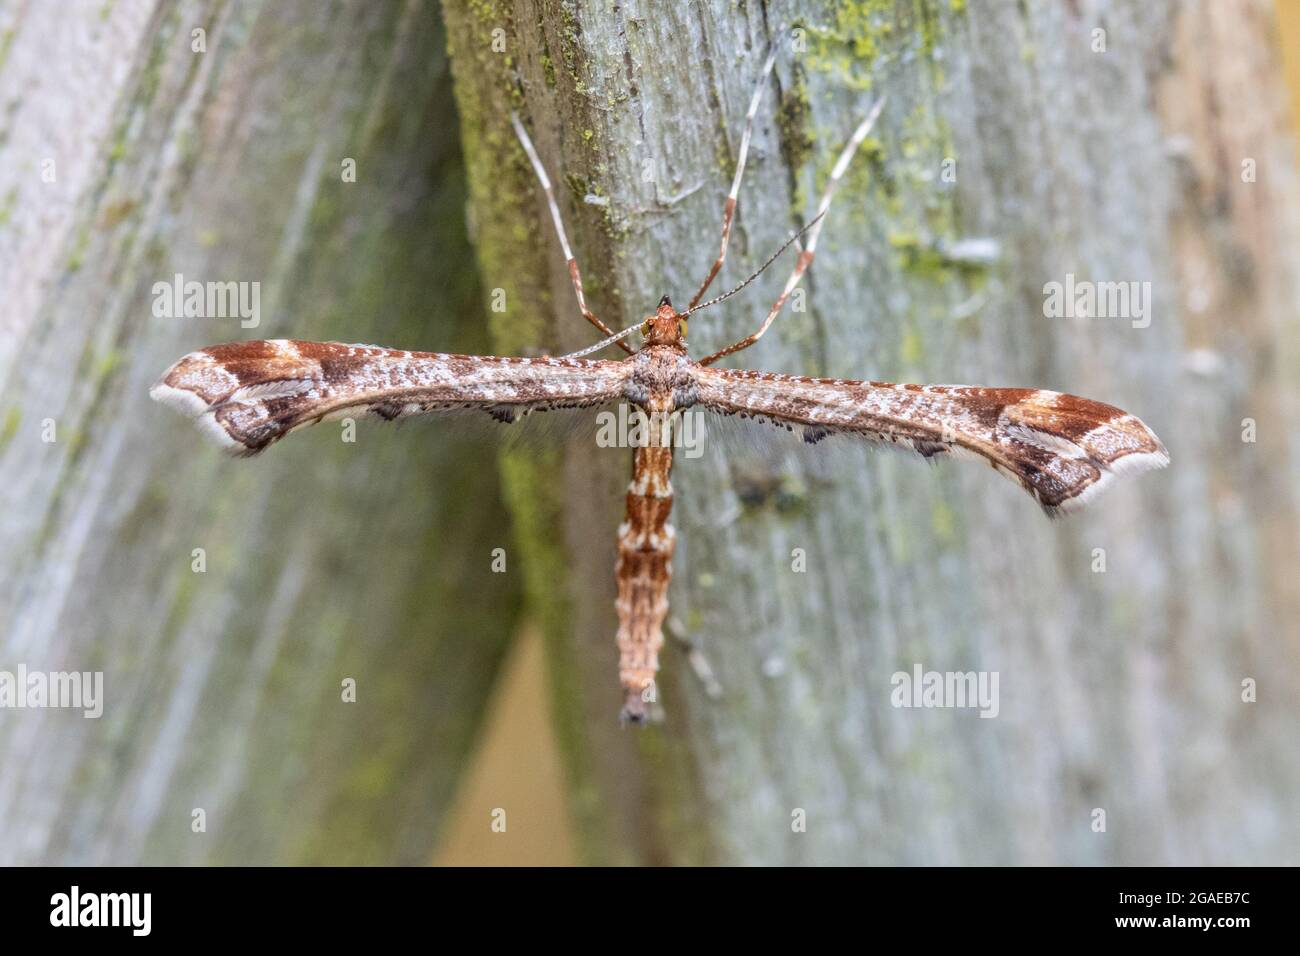 UK Wildlife: Schöne Plume (Amblyptilia acanthadactyla) Motte auf einem Zaun thront, nachdem sie beim Mähen des Rasens gestört wurde, in kreuzförmigen Ruhe p Stockfoto